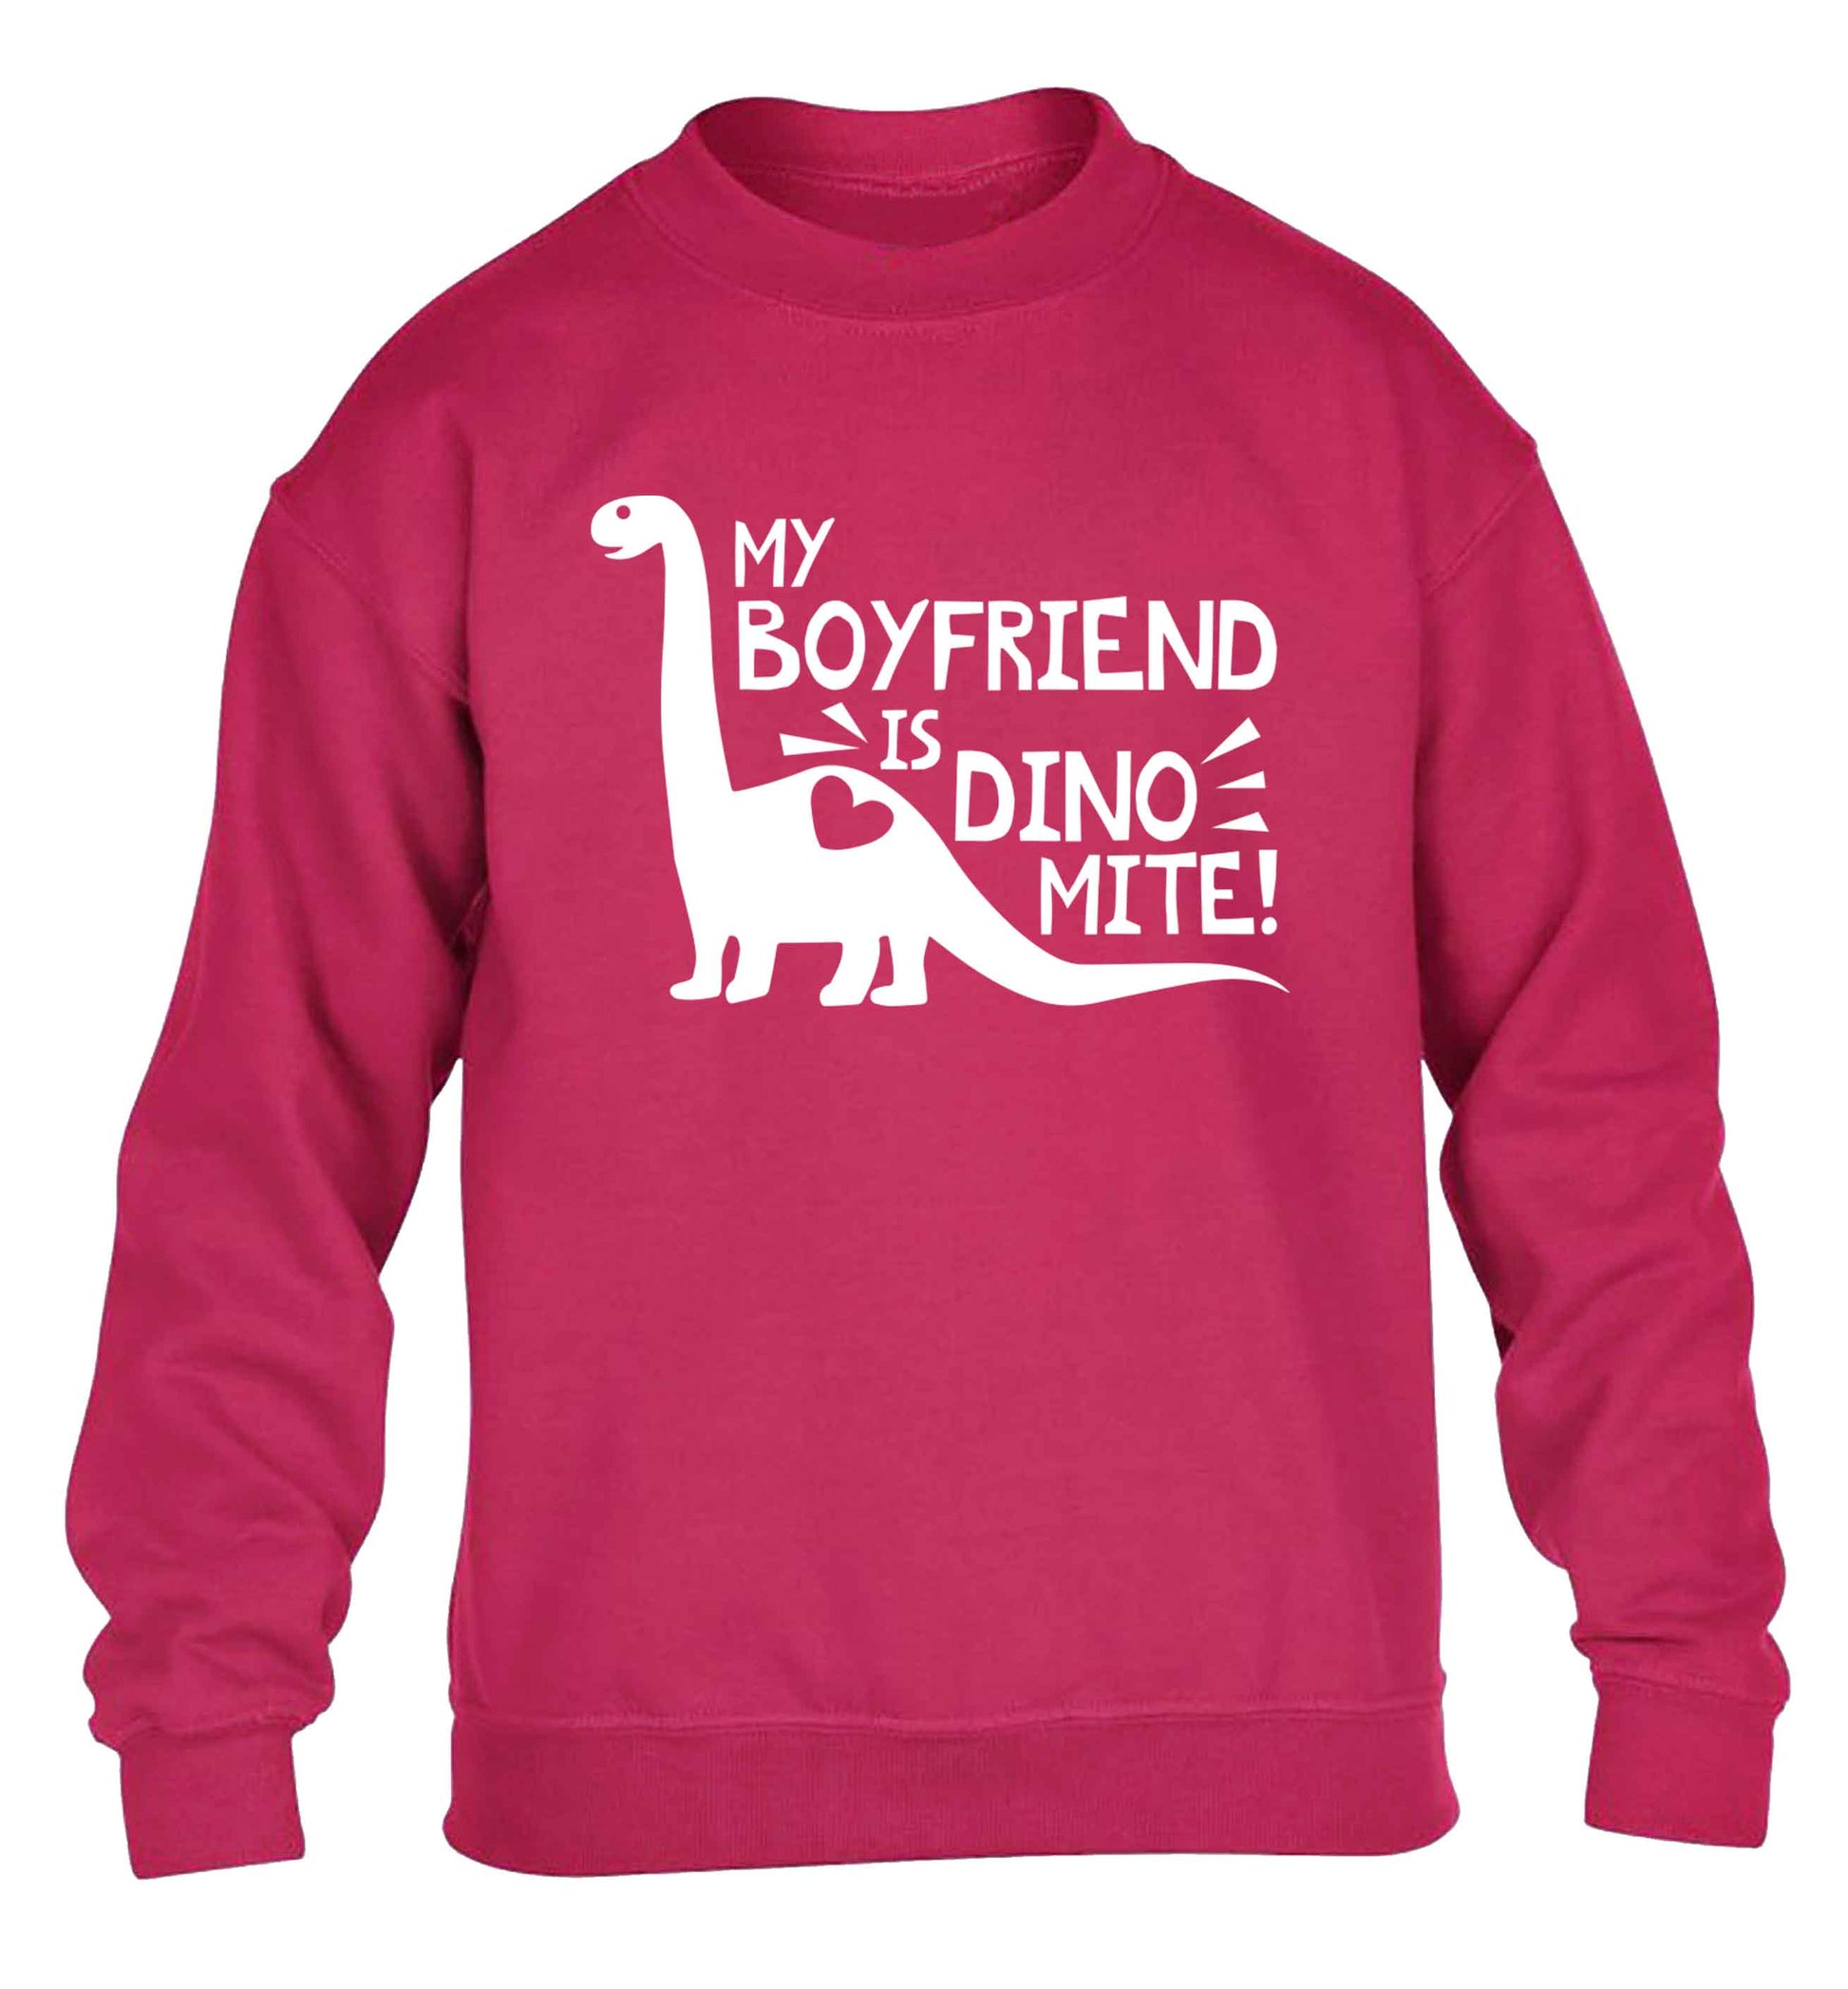 My boyfriend is dinomite! children's pink sweater 12-13 Years